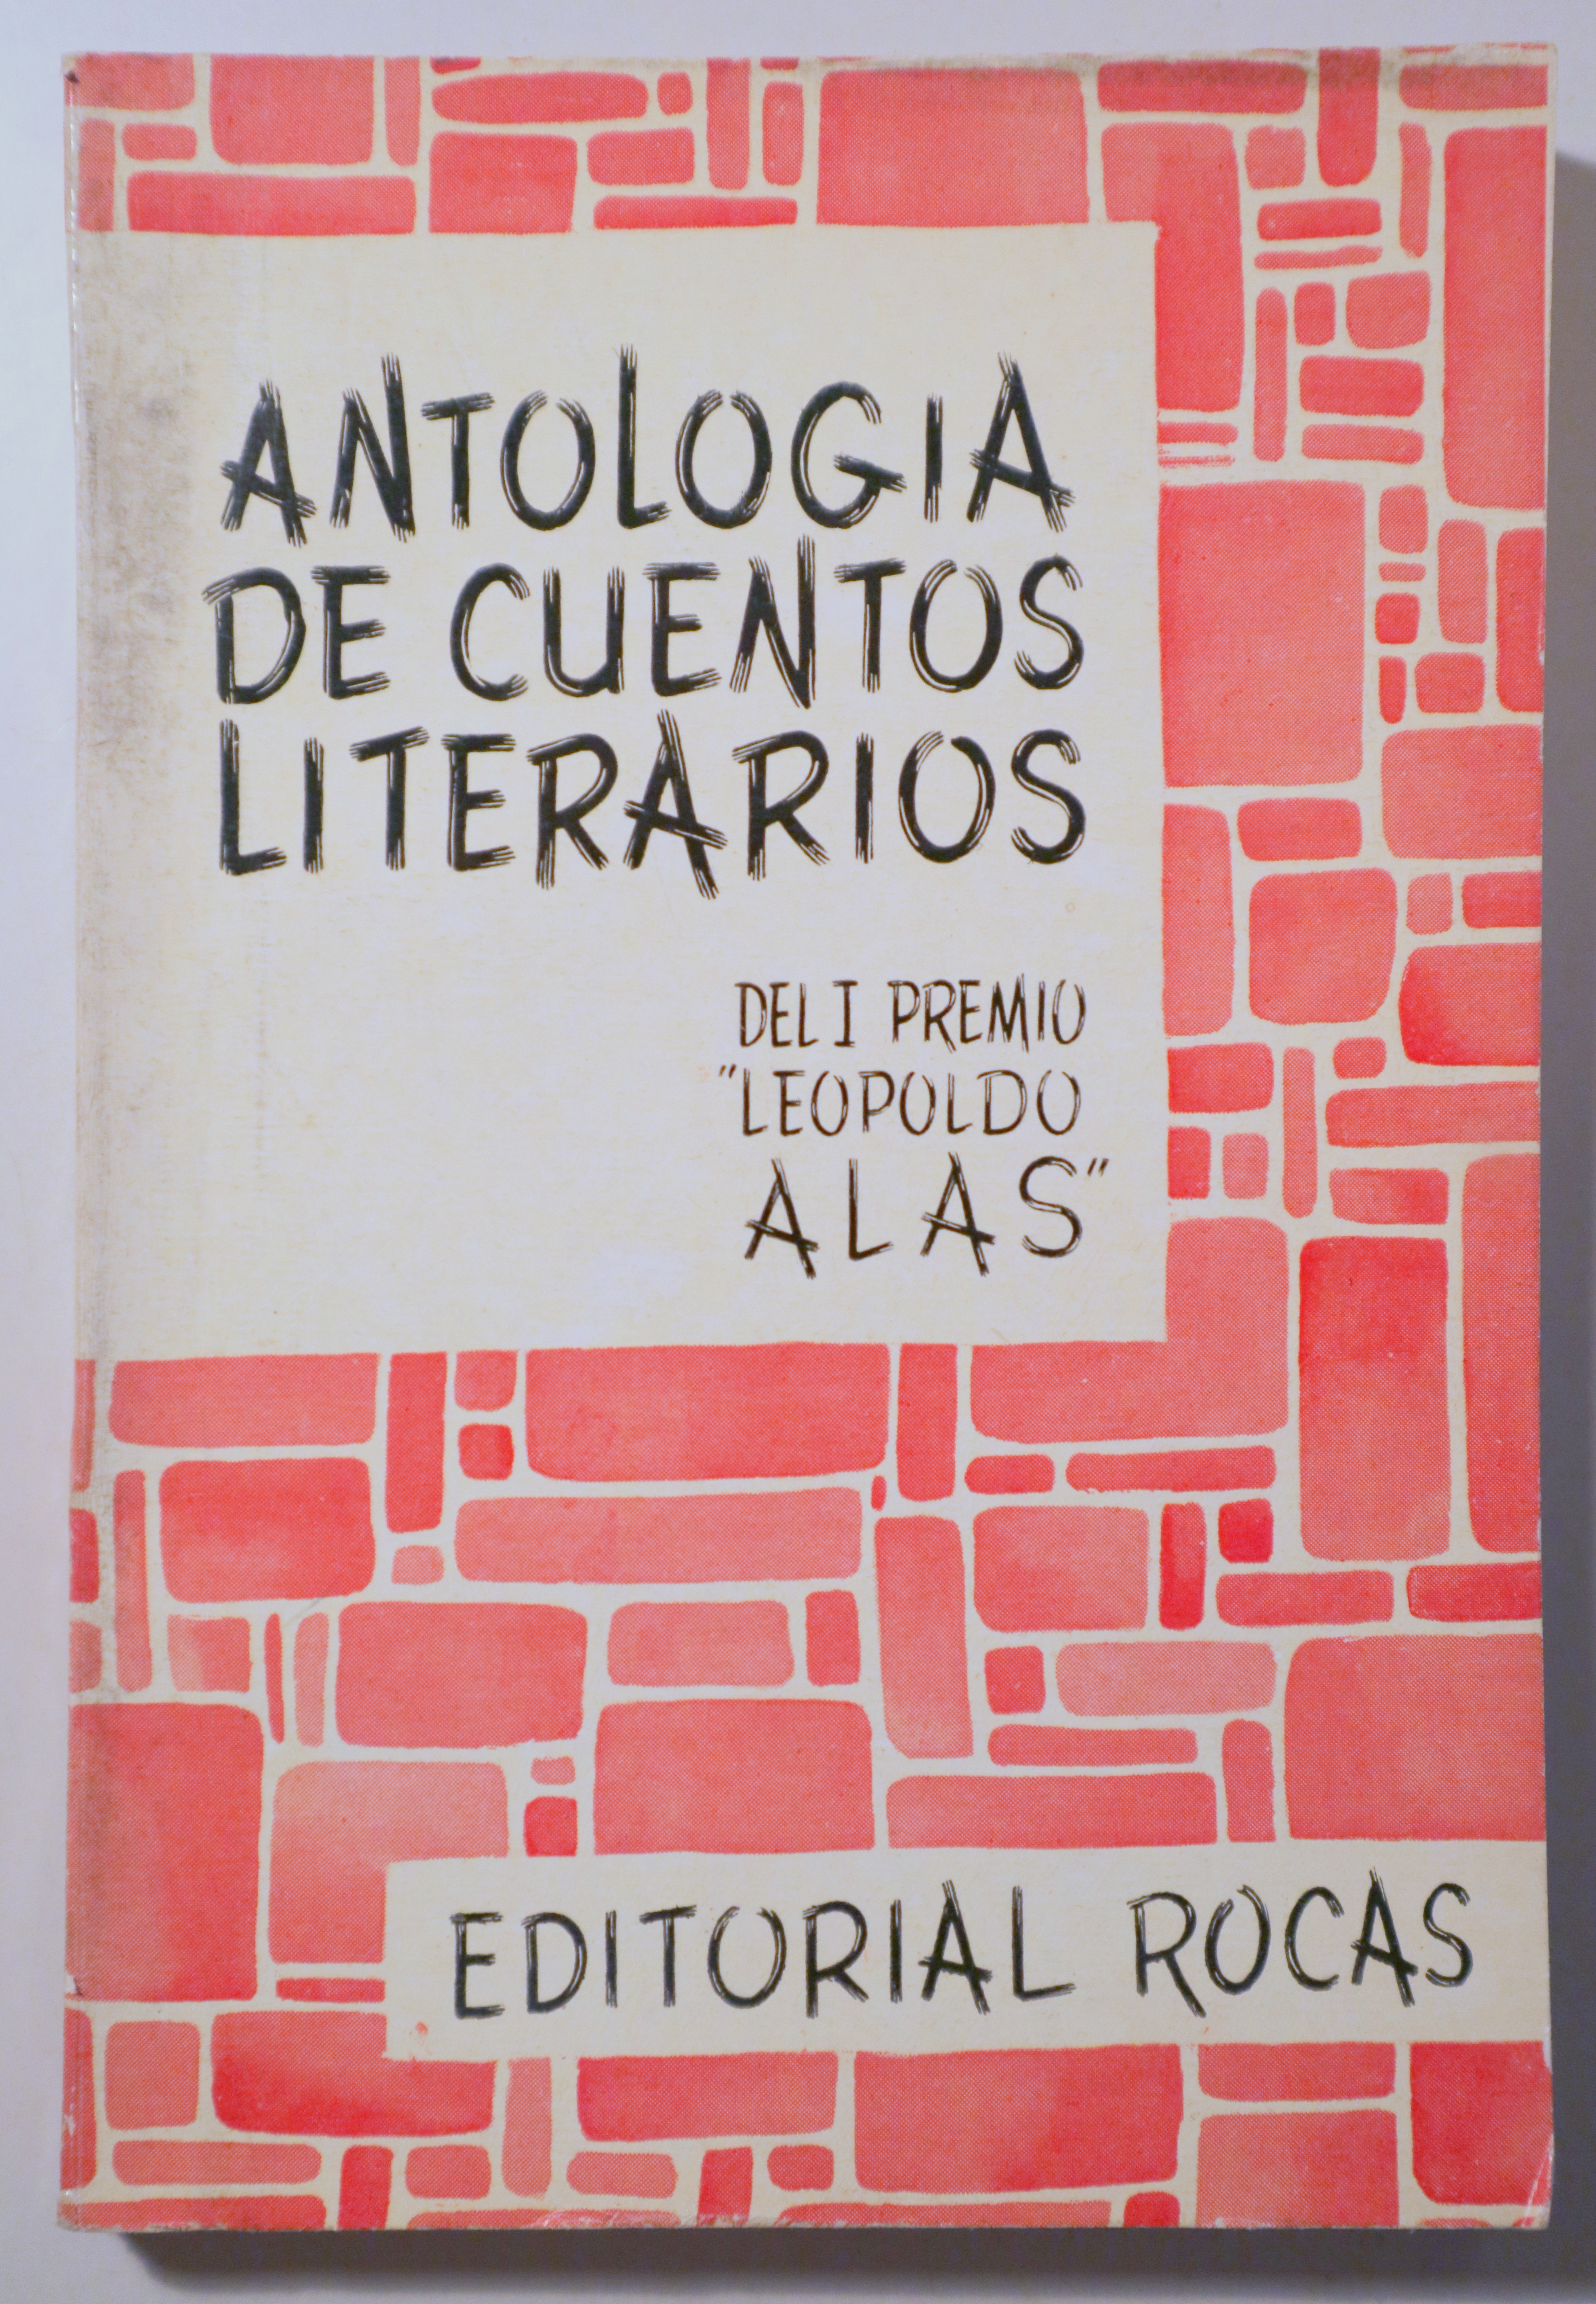 ANTOLOGÍA DEL I PREMIO LEOPOLDO ALAS PARA LIBROS DE CUENTOS LITERARIOS - Barcelona 1955